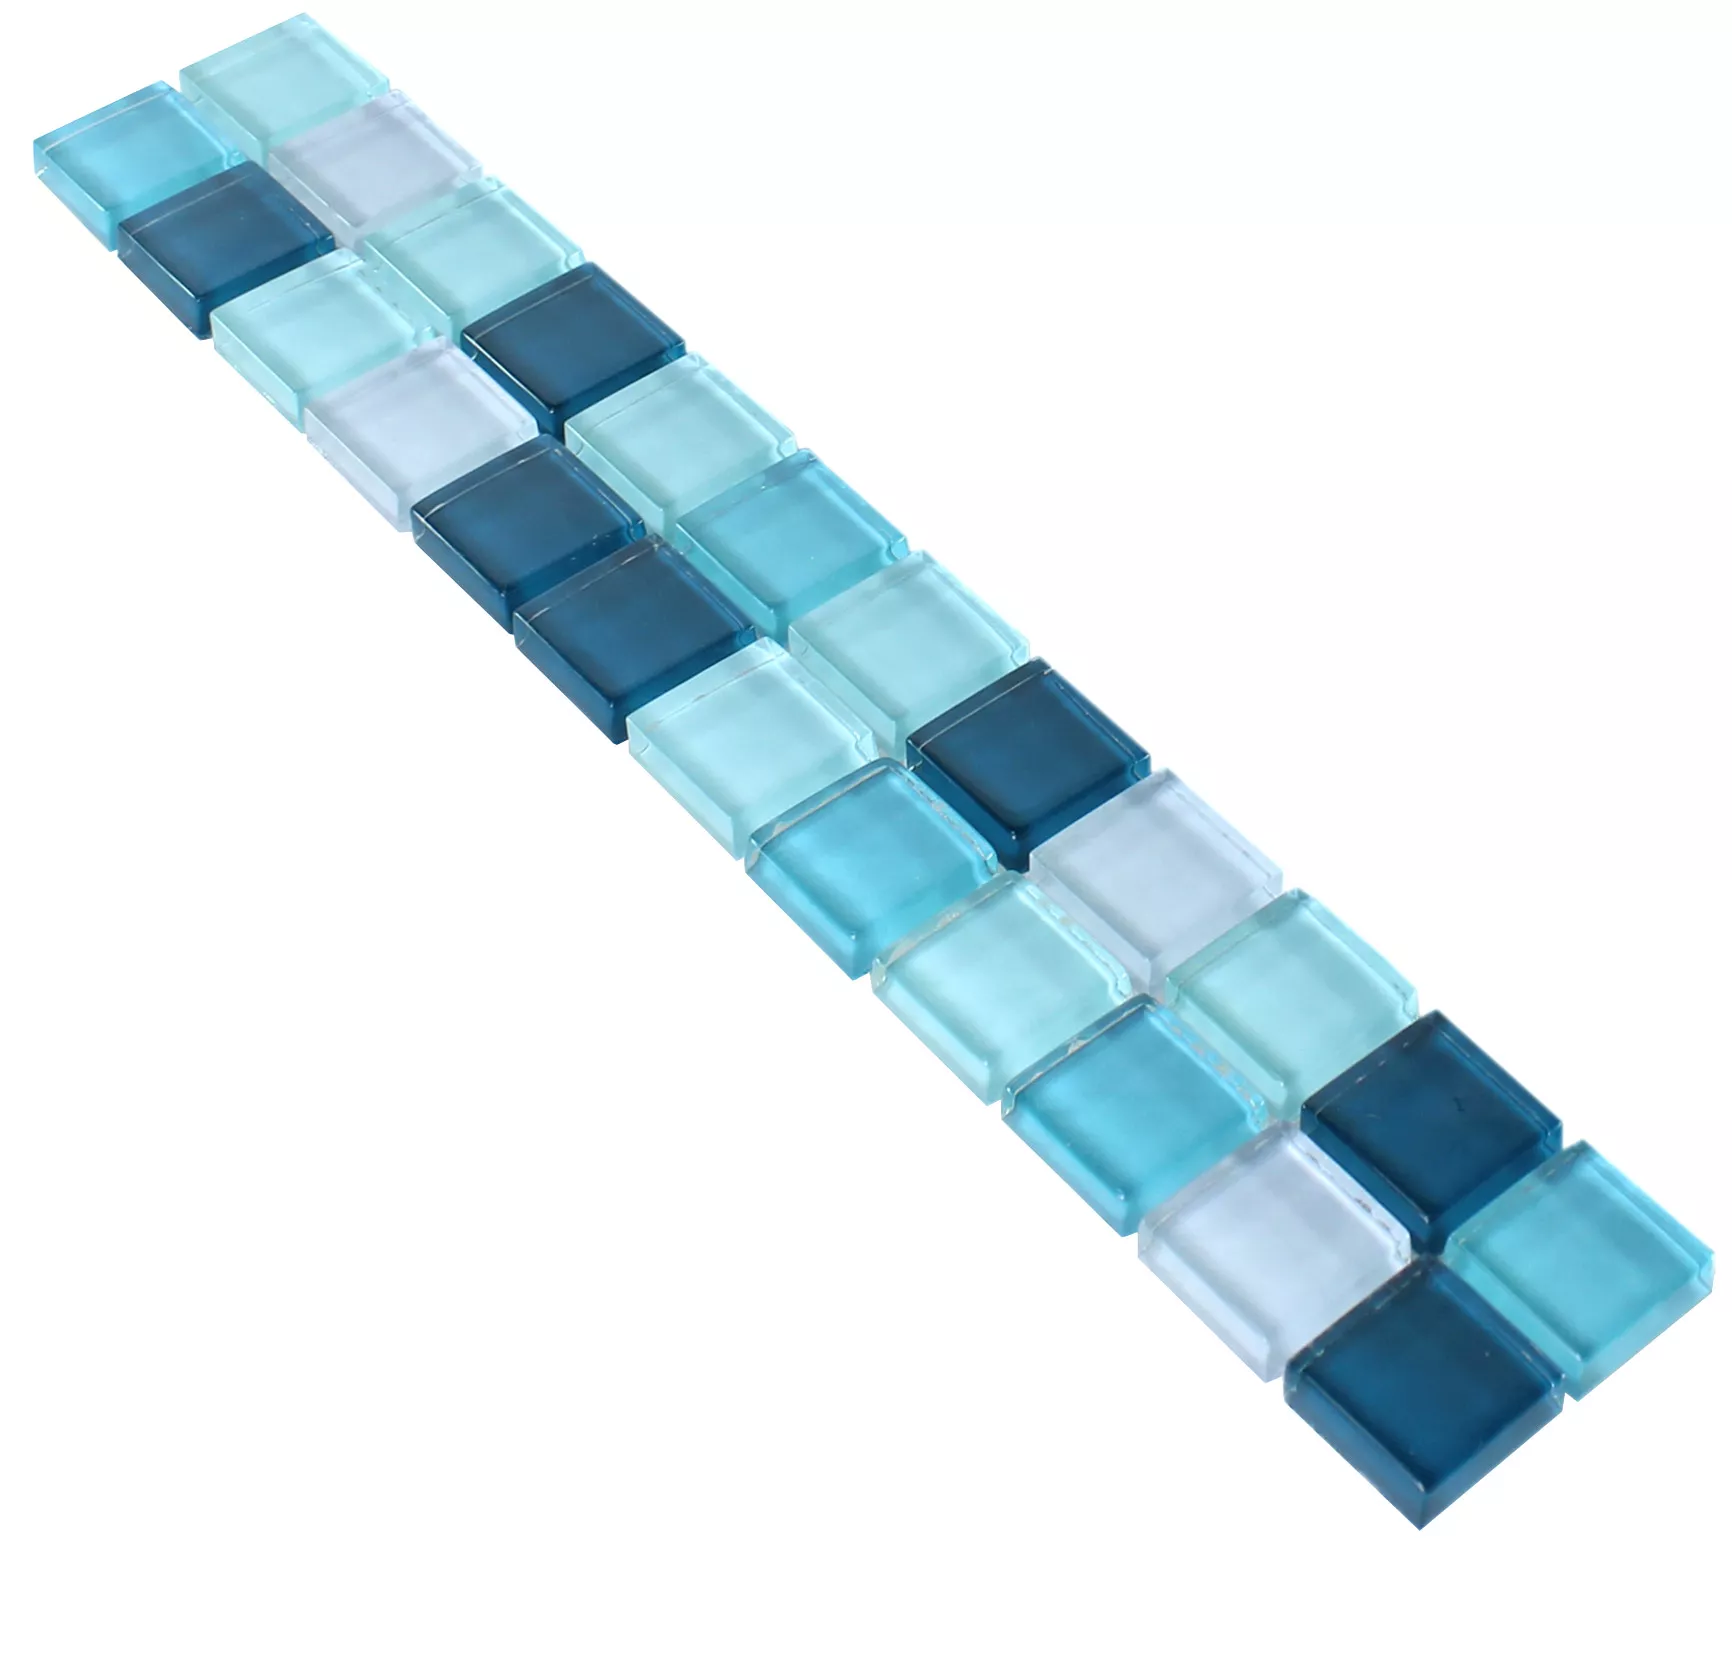 Mosaico De Vidro Borda de Azulejo Akron Azul Verde